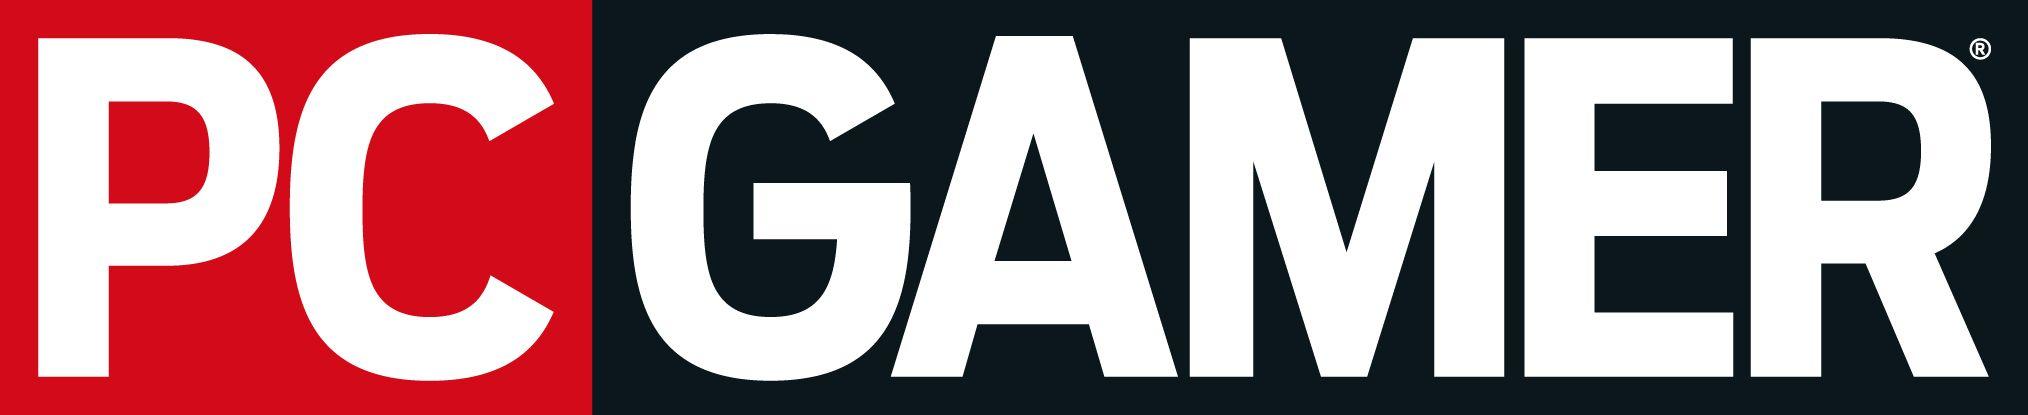 Computer Gaming Logo - Pc gamer Logos